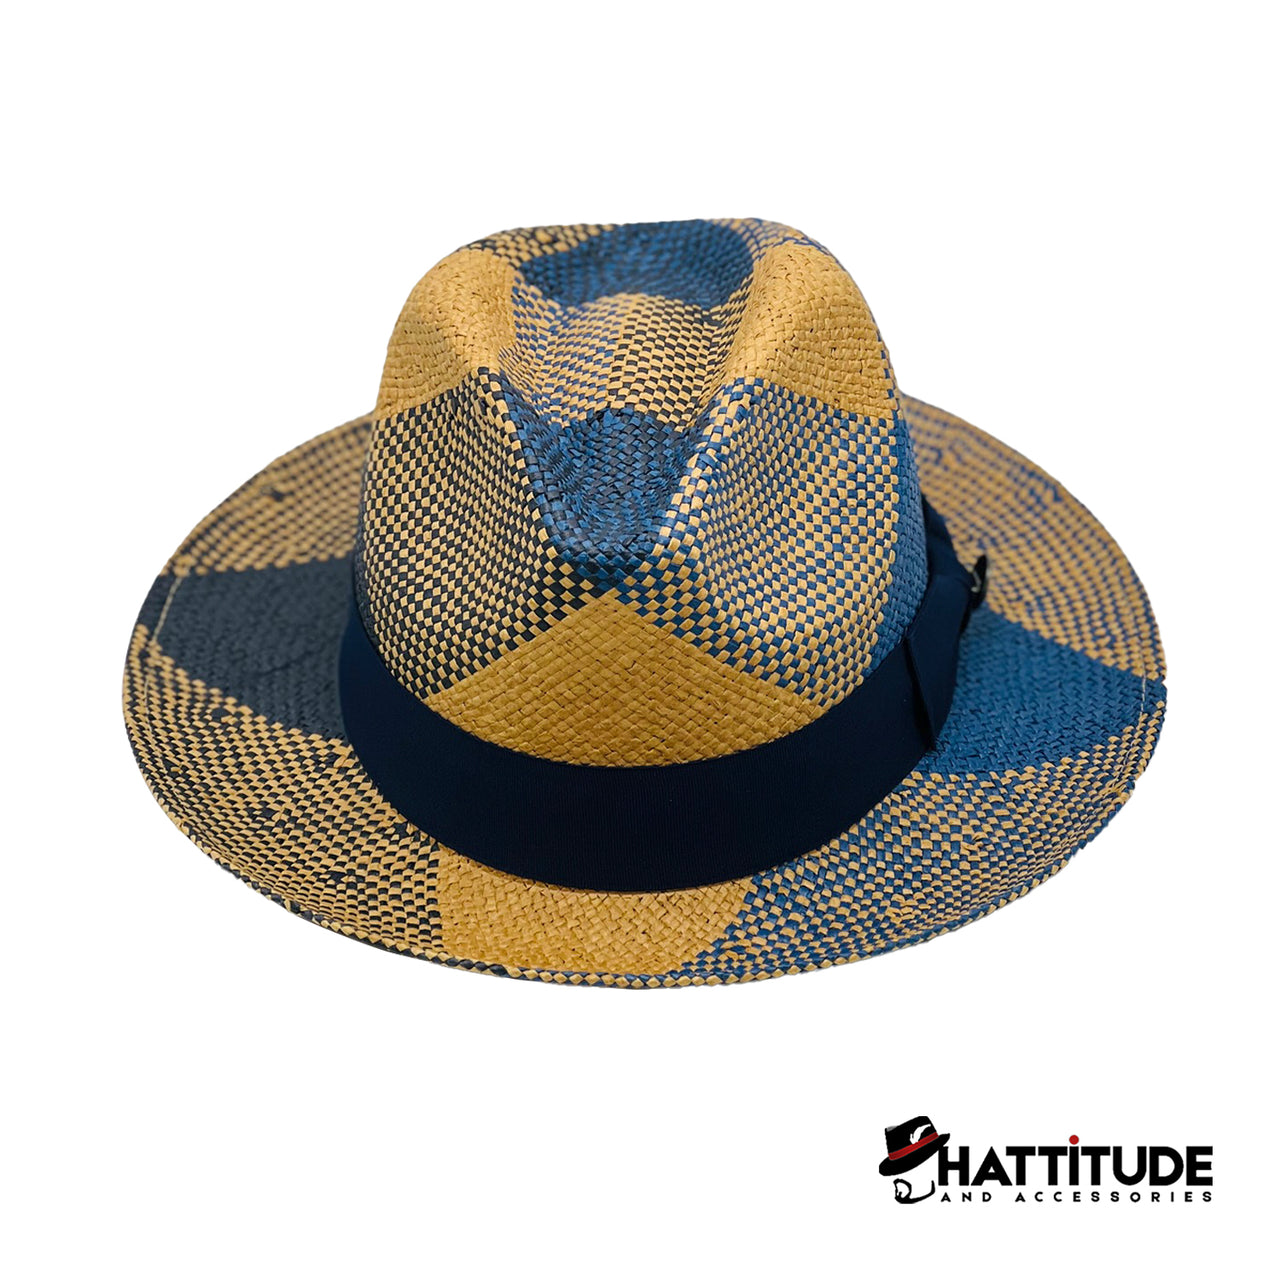 Cuban Collection - Hattitude